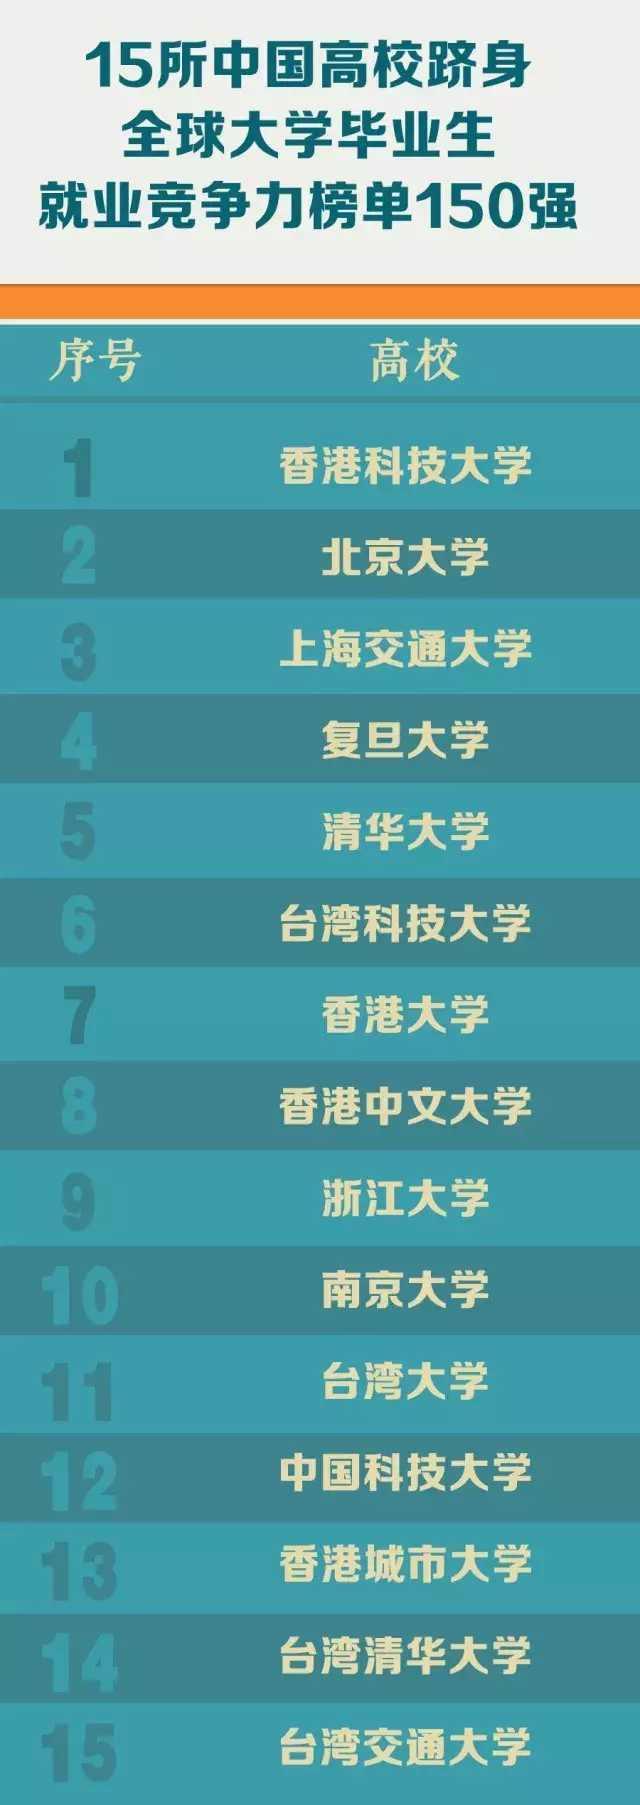 2017全球大学就业竞争力排行榜top100公布，中国15所大学上榜!